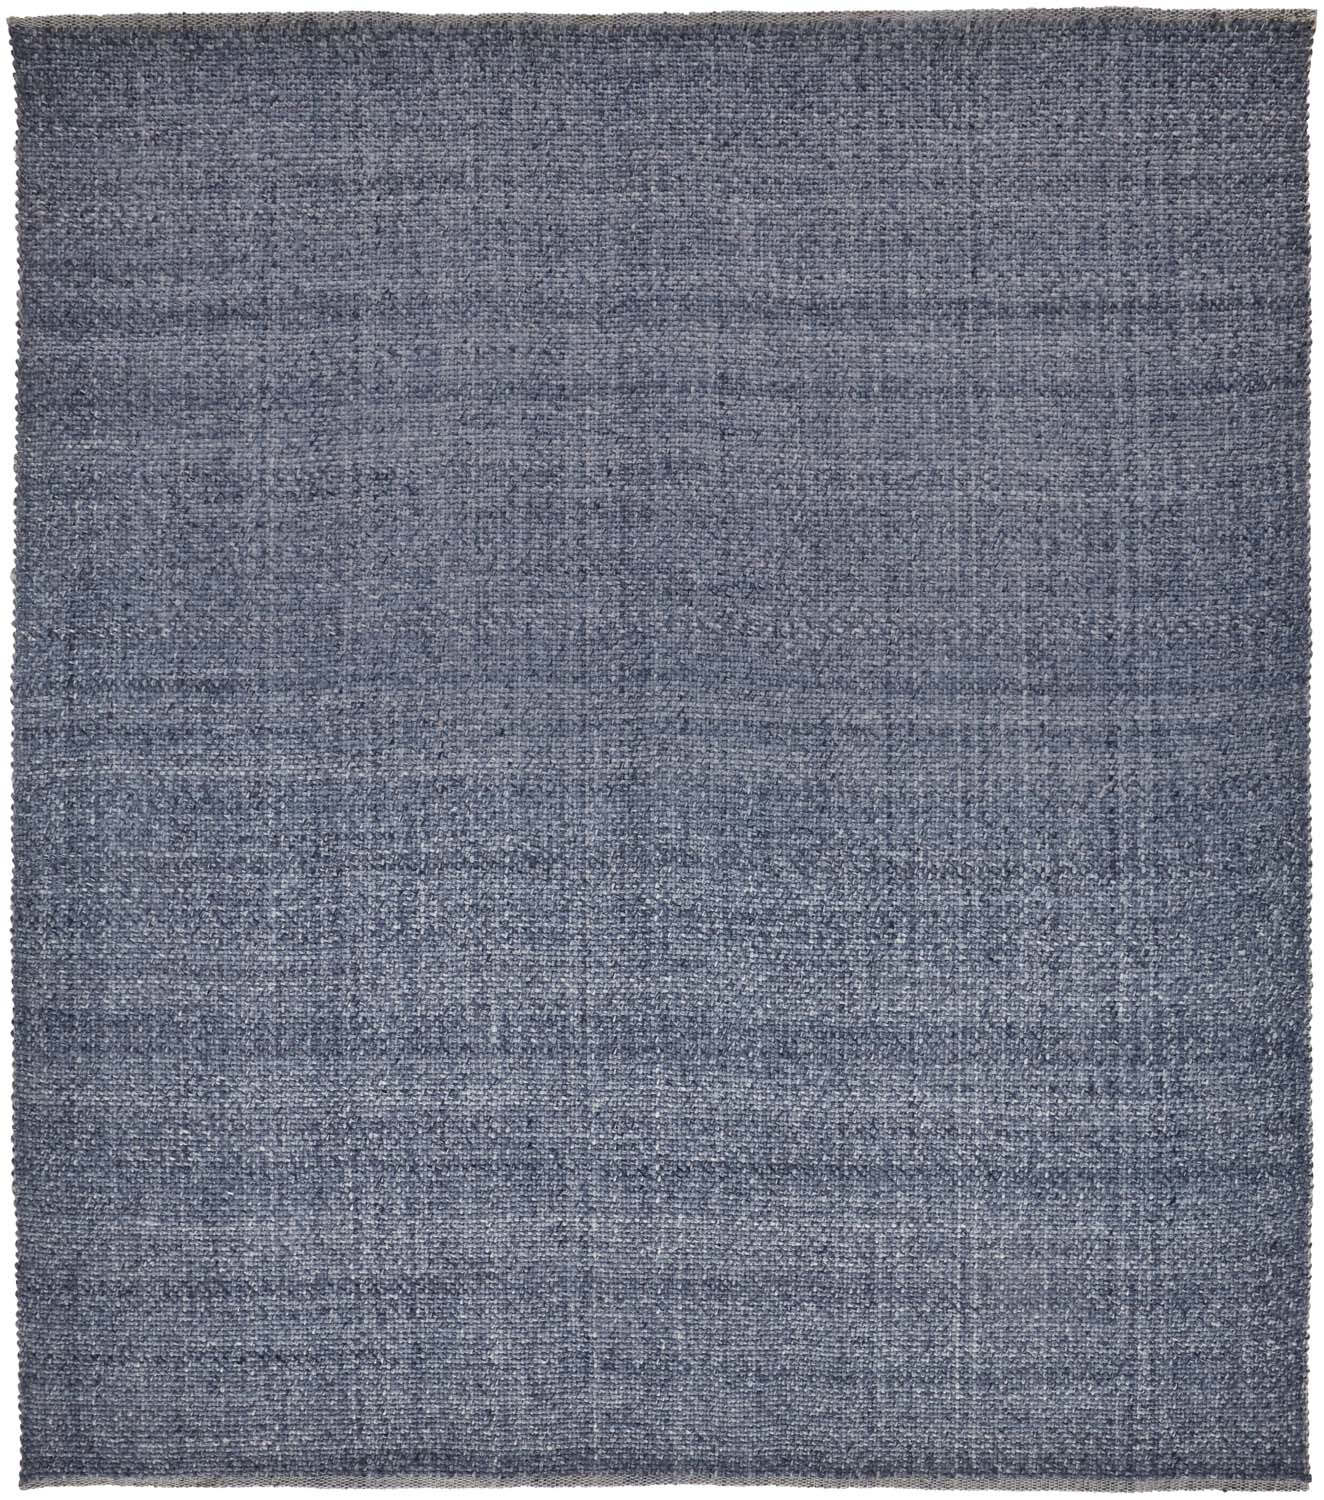 blue fabric